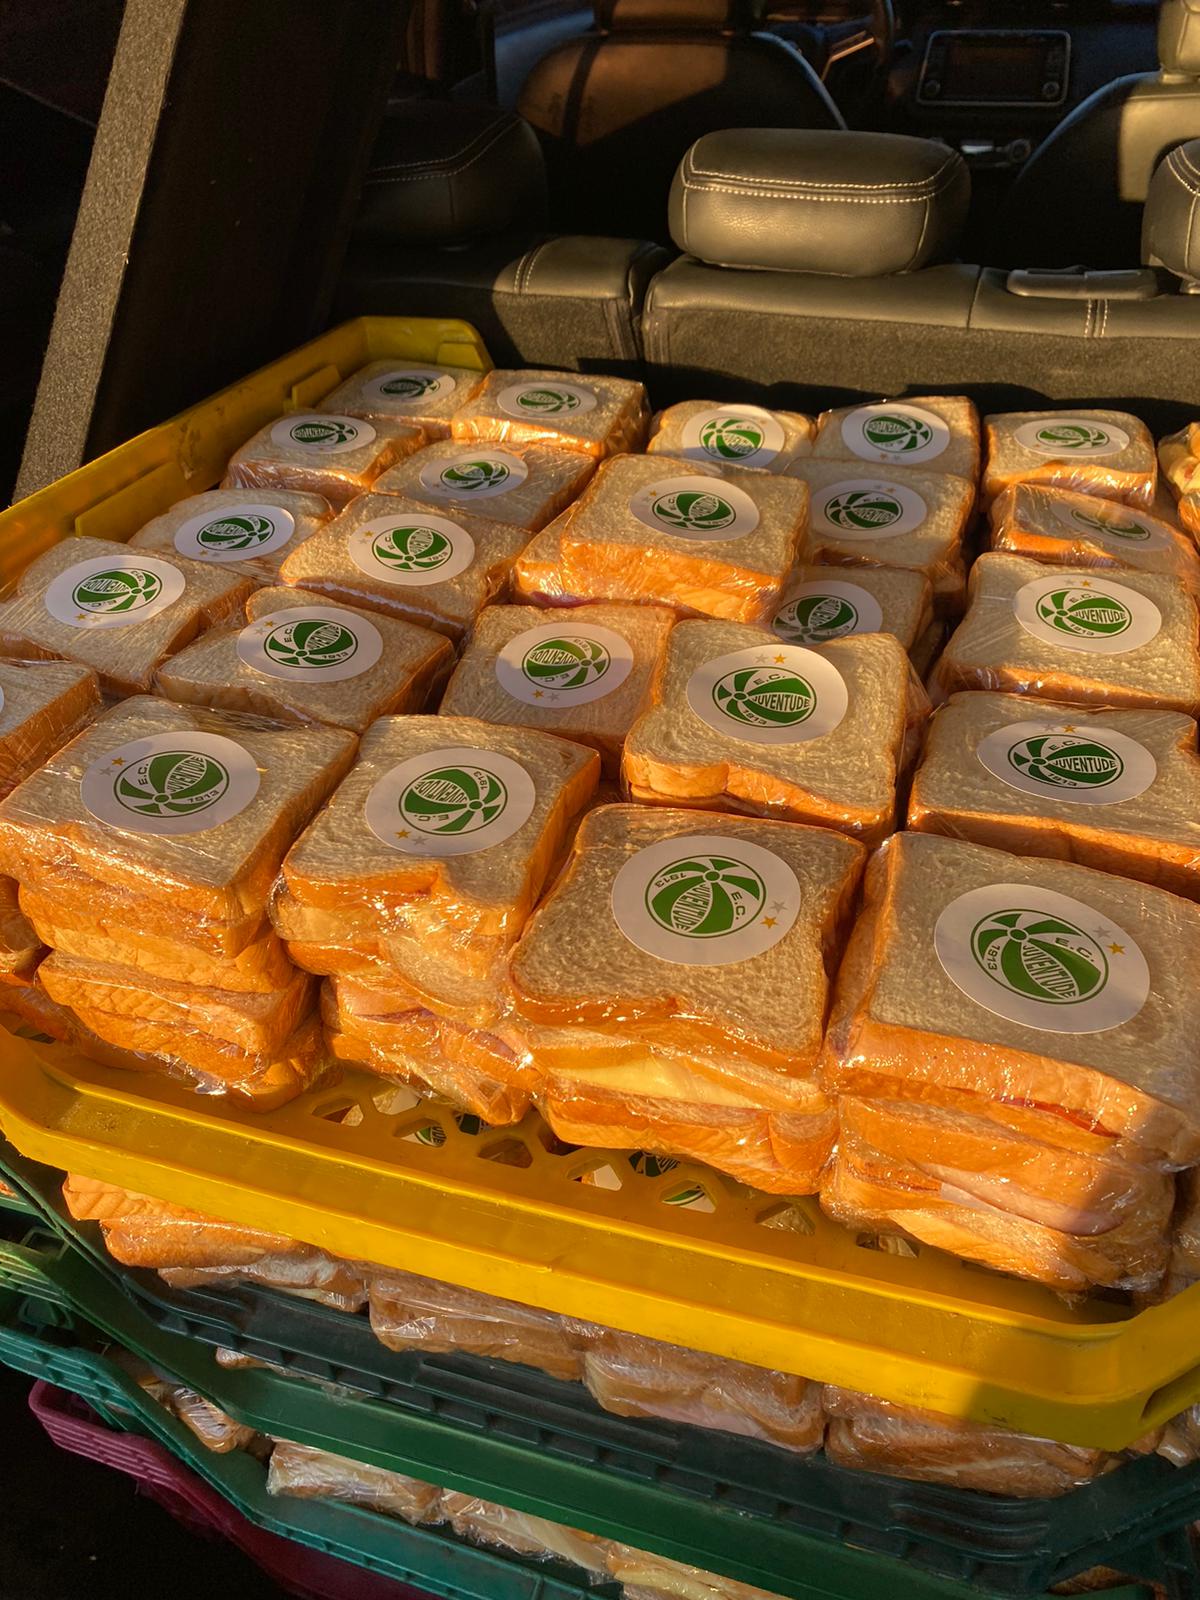 Com participação engajada dos funcionários, Juventude realiza entrega de 700 sanduíches para as vítimas das enchentes no Rio Grande do Sul